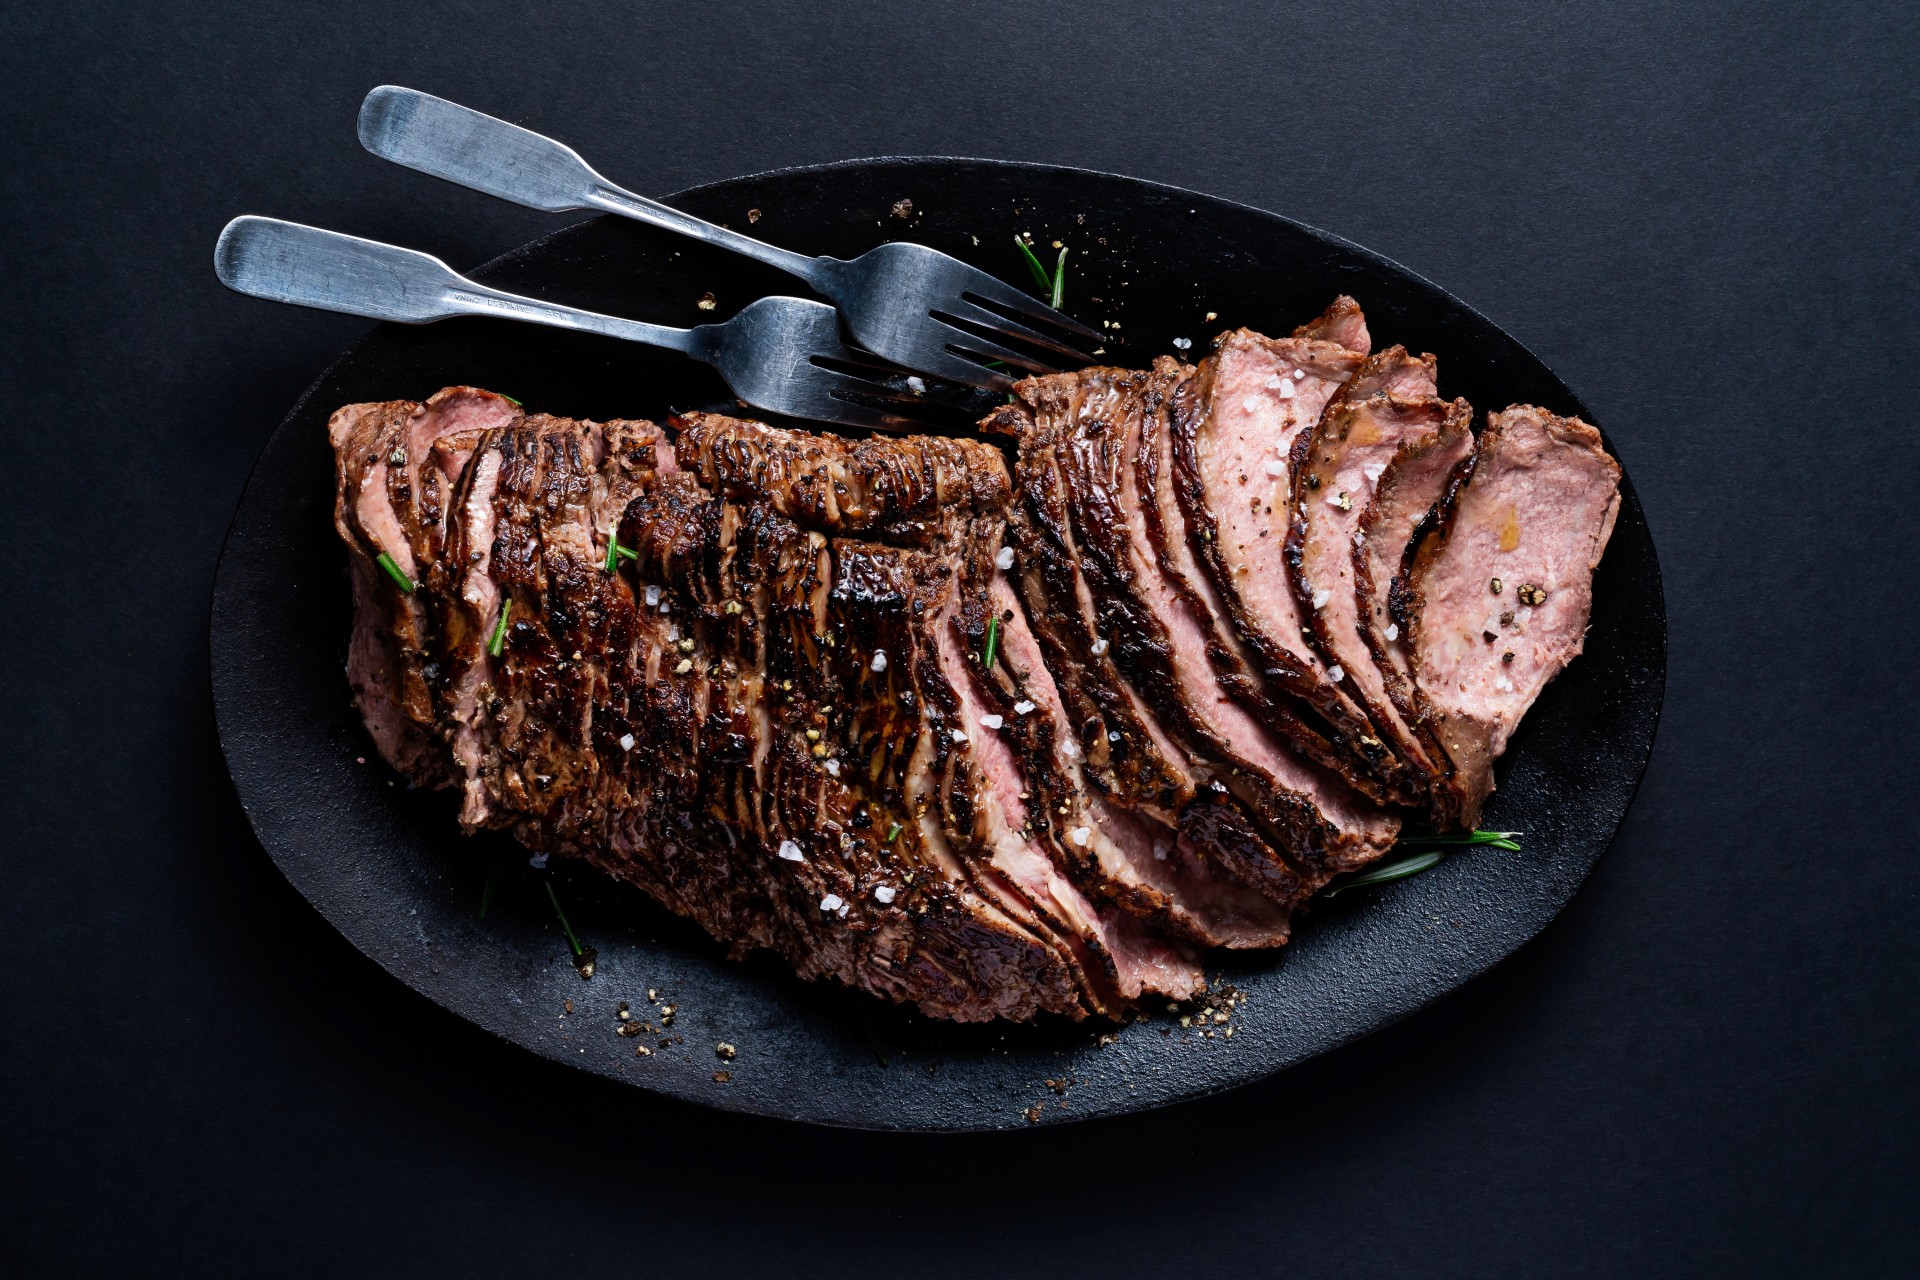 plated sliced roast beef